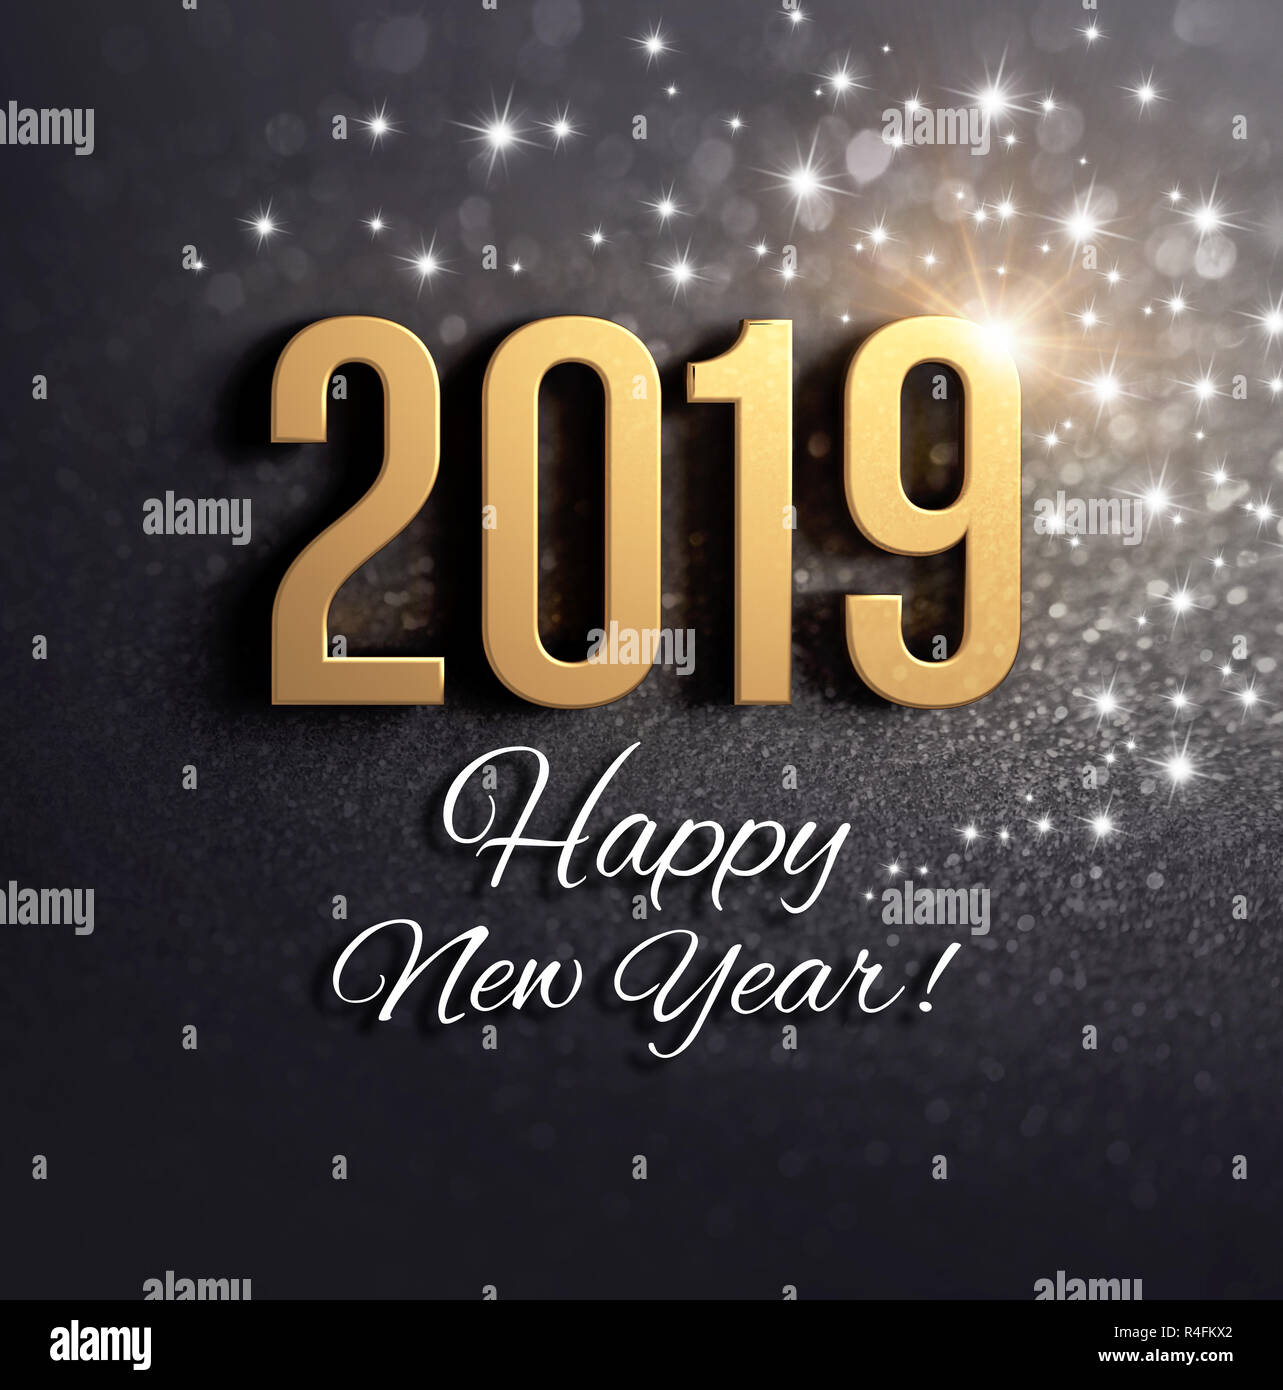 Felice Anno Nuovo saluti e 2019 data numero colorati in oro, su una festosa sfondo nero con brillantini e stelle - 3D illustrazione Foto Stock